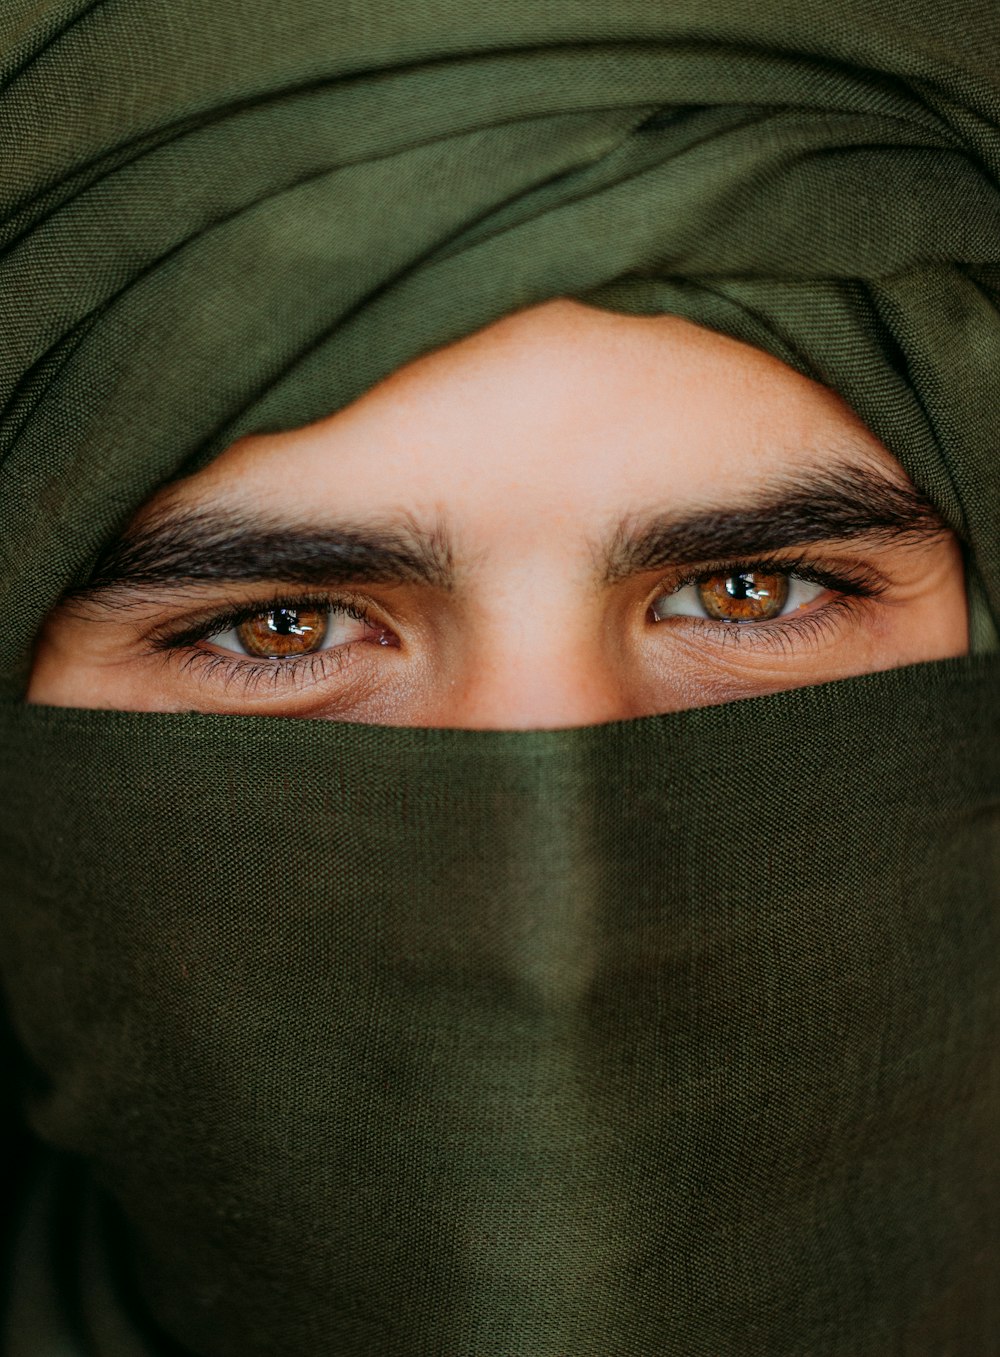 Más de 1000 fotos de hombres árabes | Descargar imágenes gratis en Unsplash